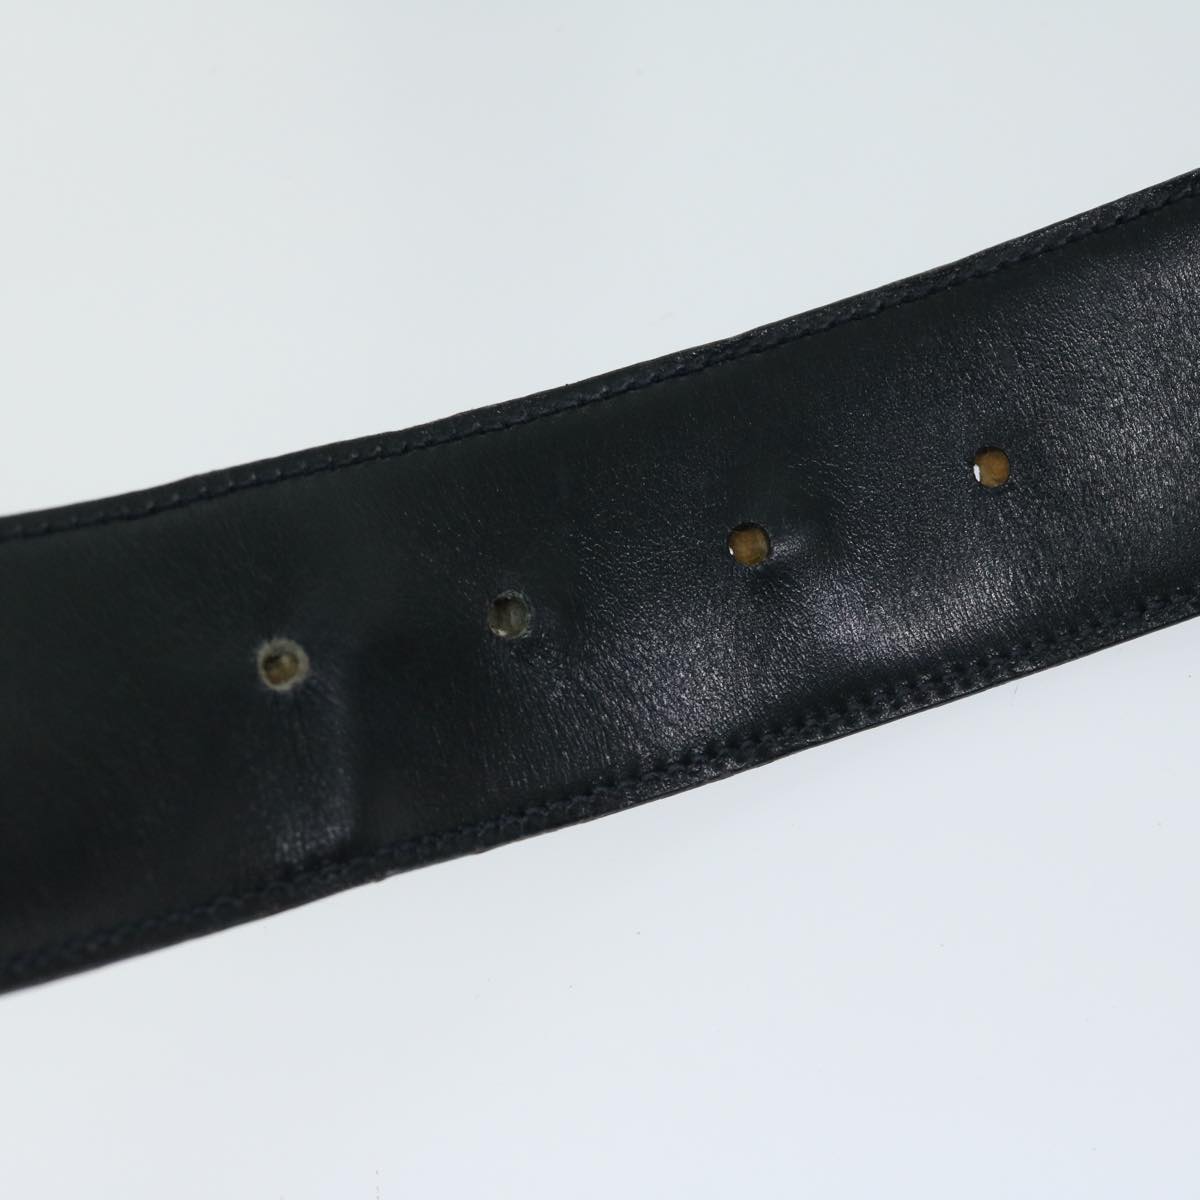 GUCCI Interlocking Belt Leather 31.5"" Navy 037 01 33 1510 Auth yk10850